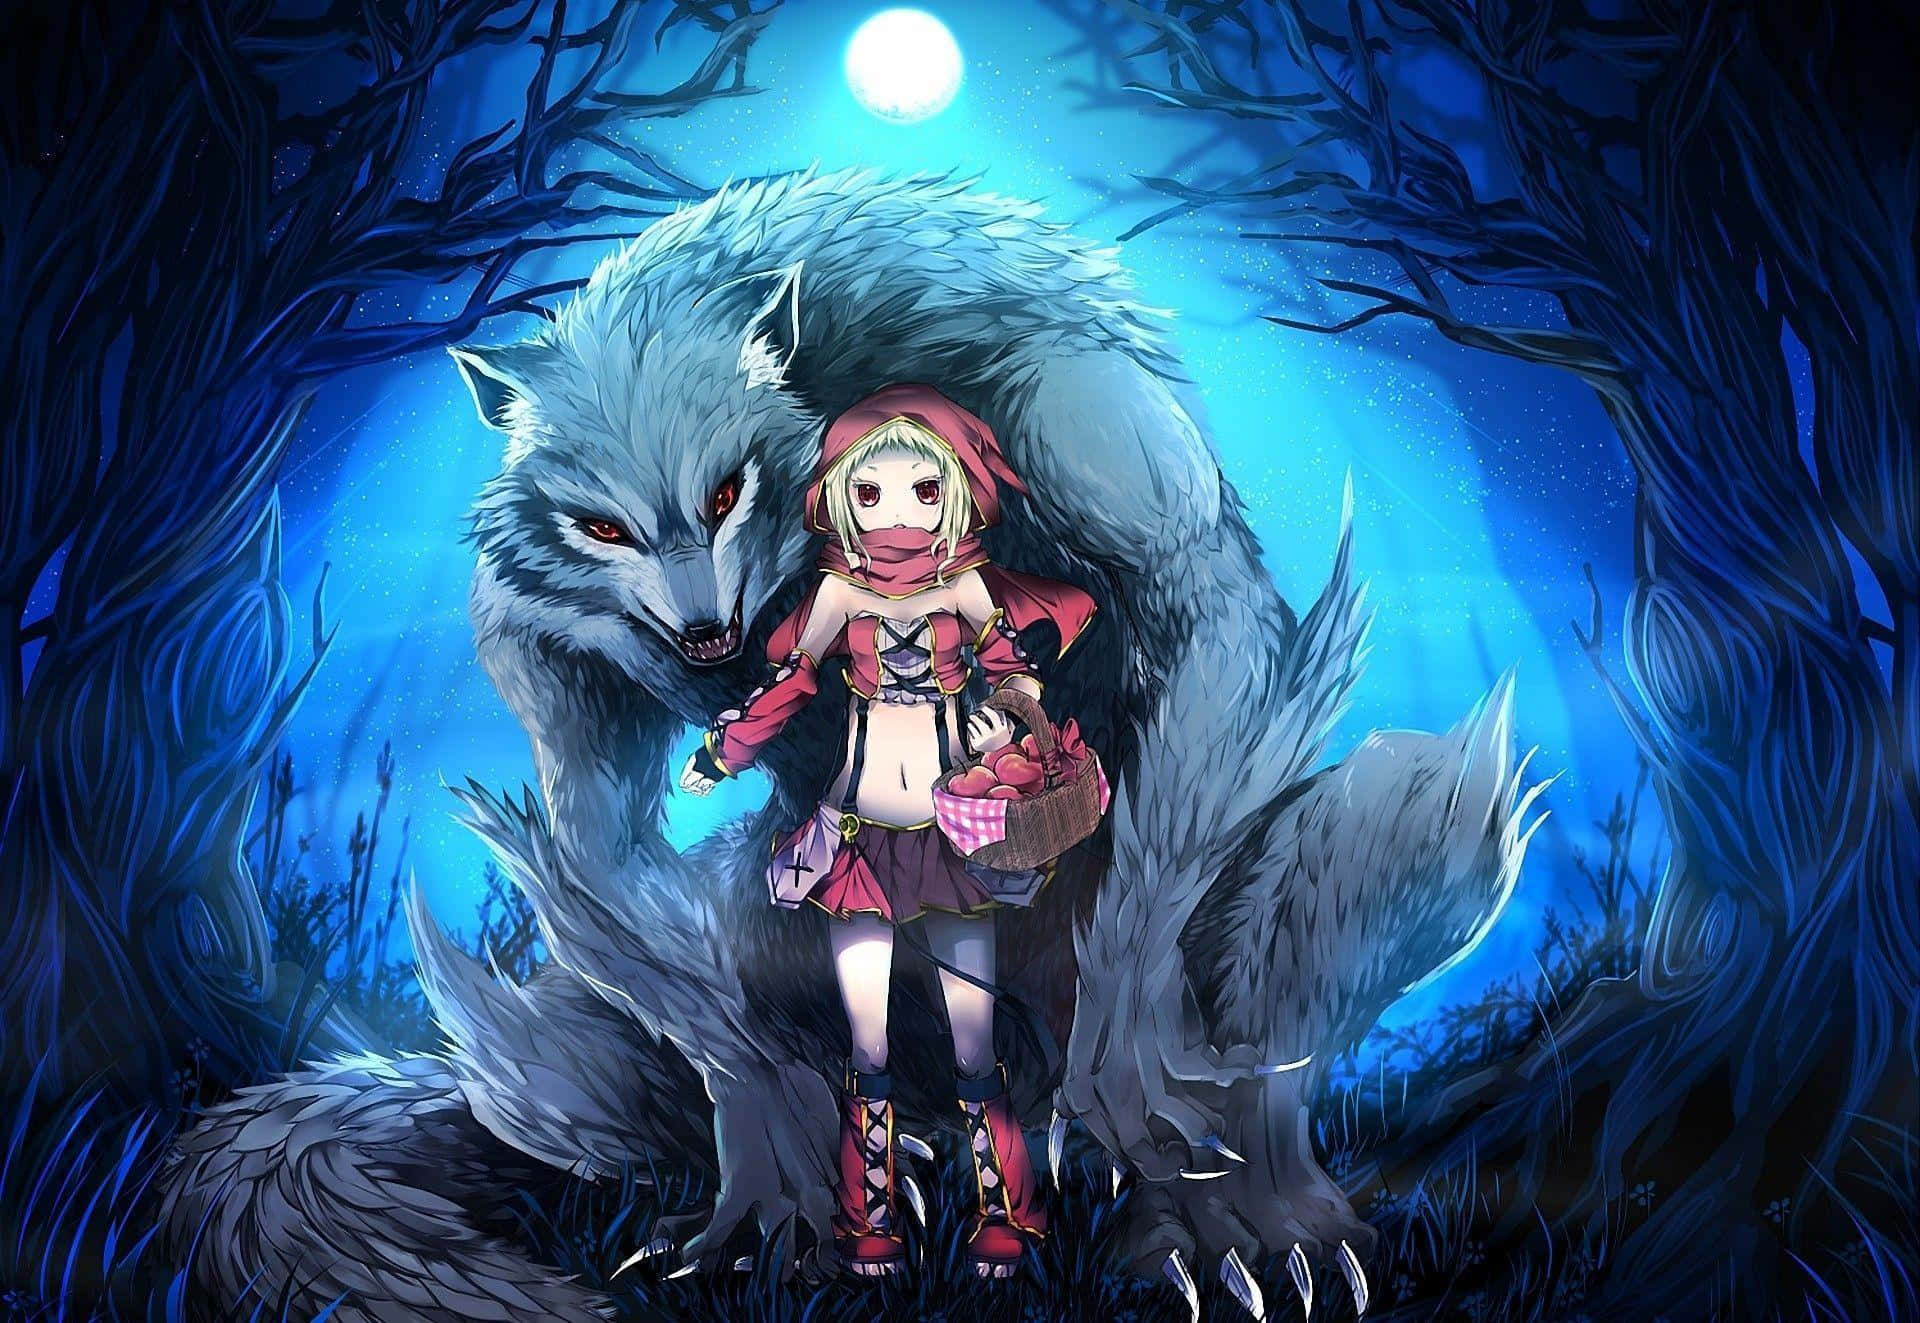 En vild, cool anime ulv står i skygger Wallpaper